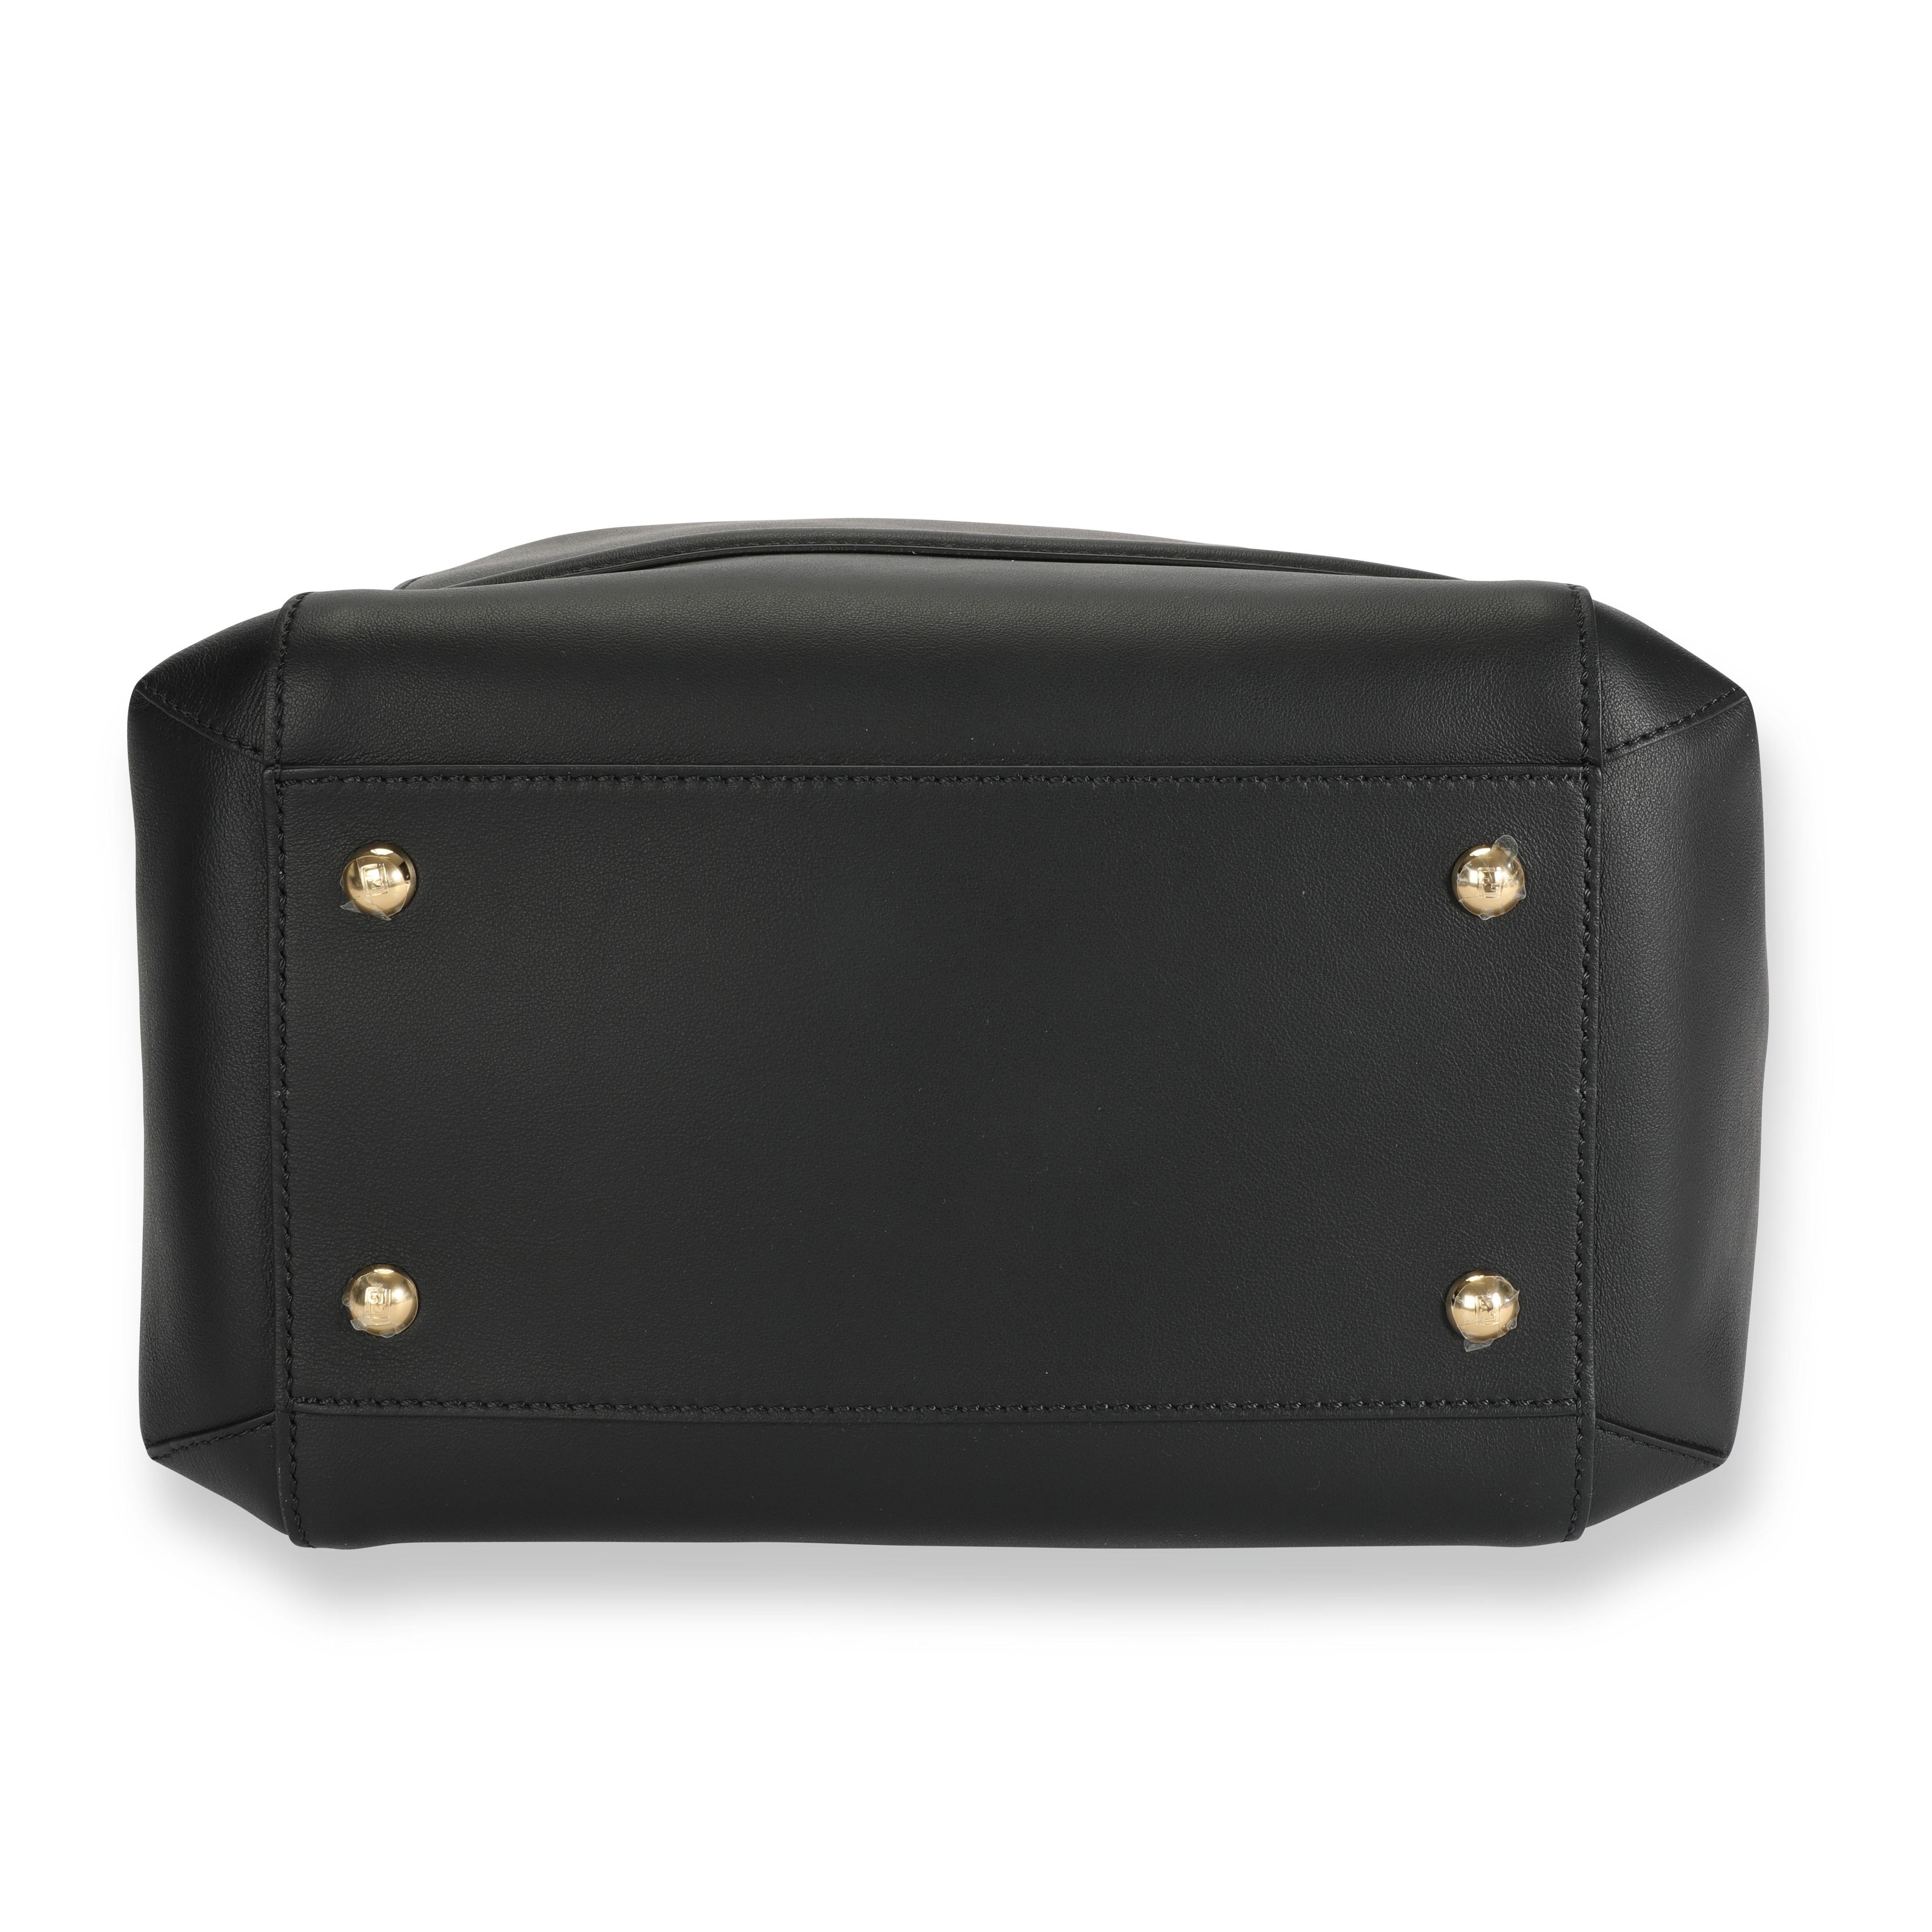 Women's Fendi Black Vitello Leather Karligraphy Chain Bucket Bag For Sale